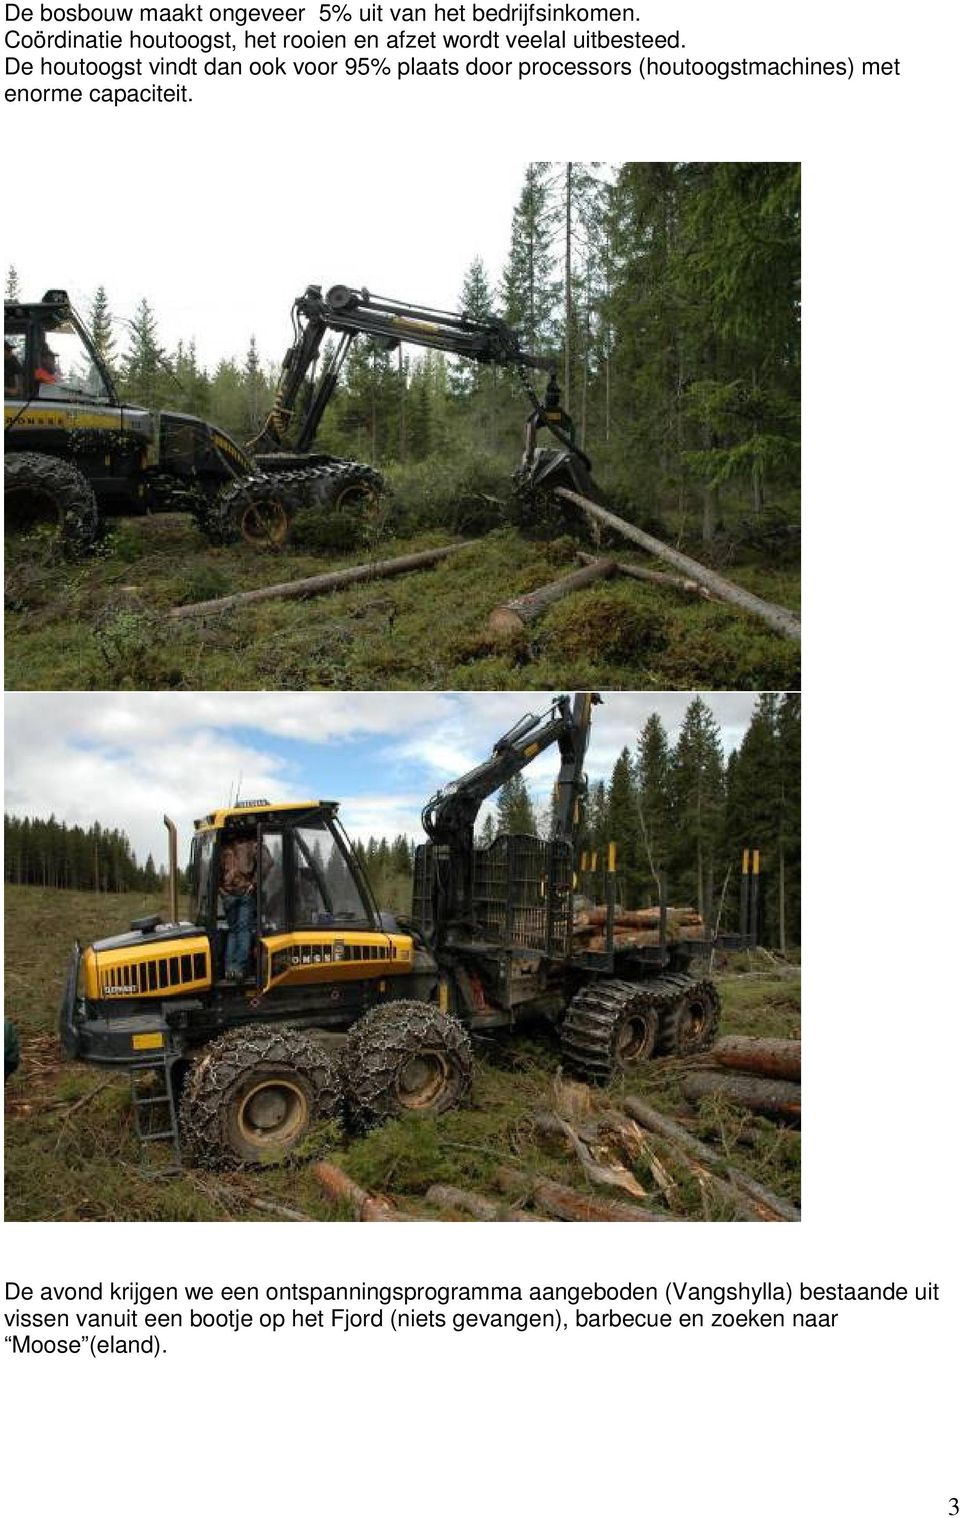 De houtoogst vindt dan ook voor 95% plaats door processors (houtoogstmachines) met enorme capaciteit.